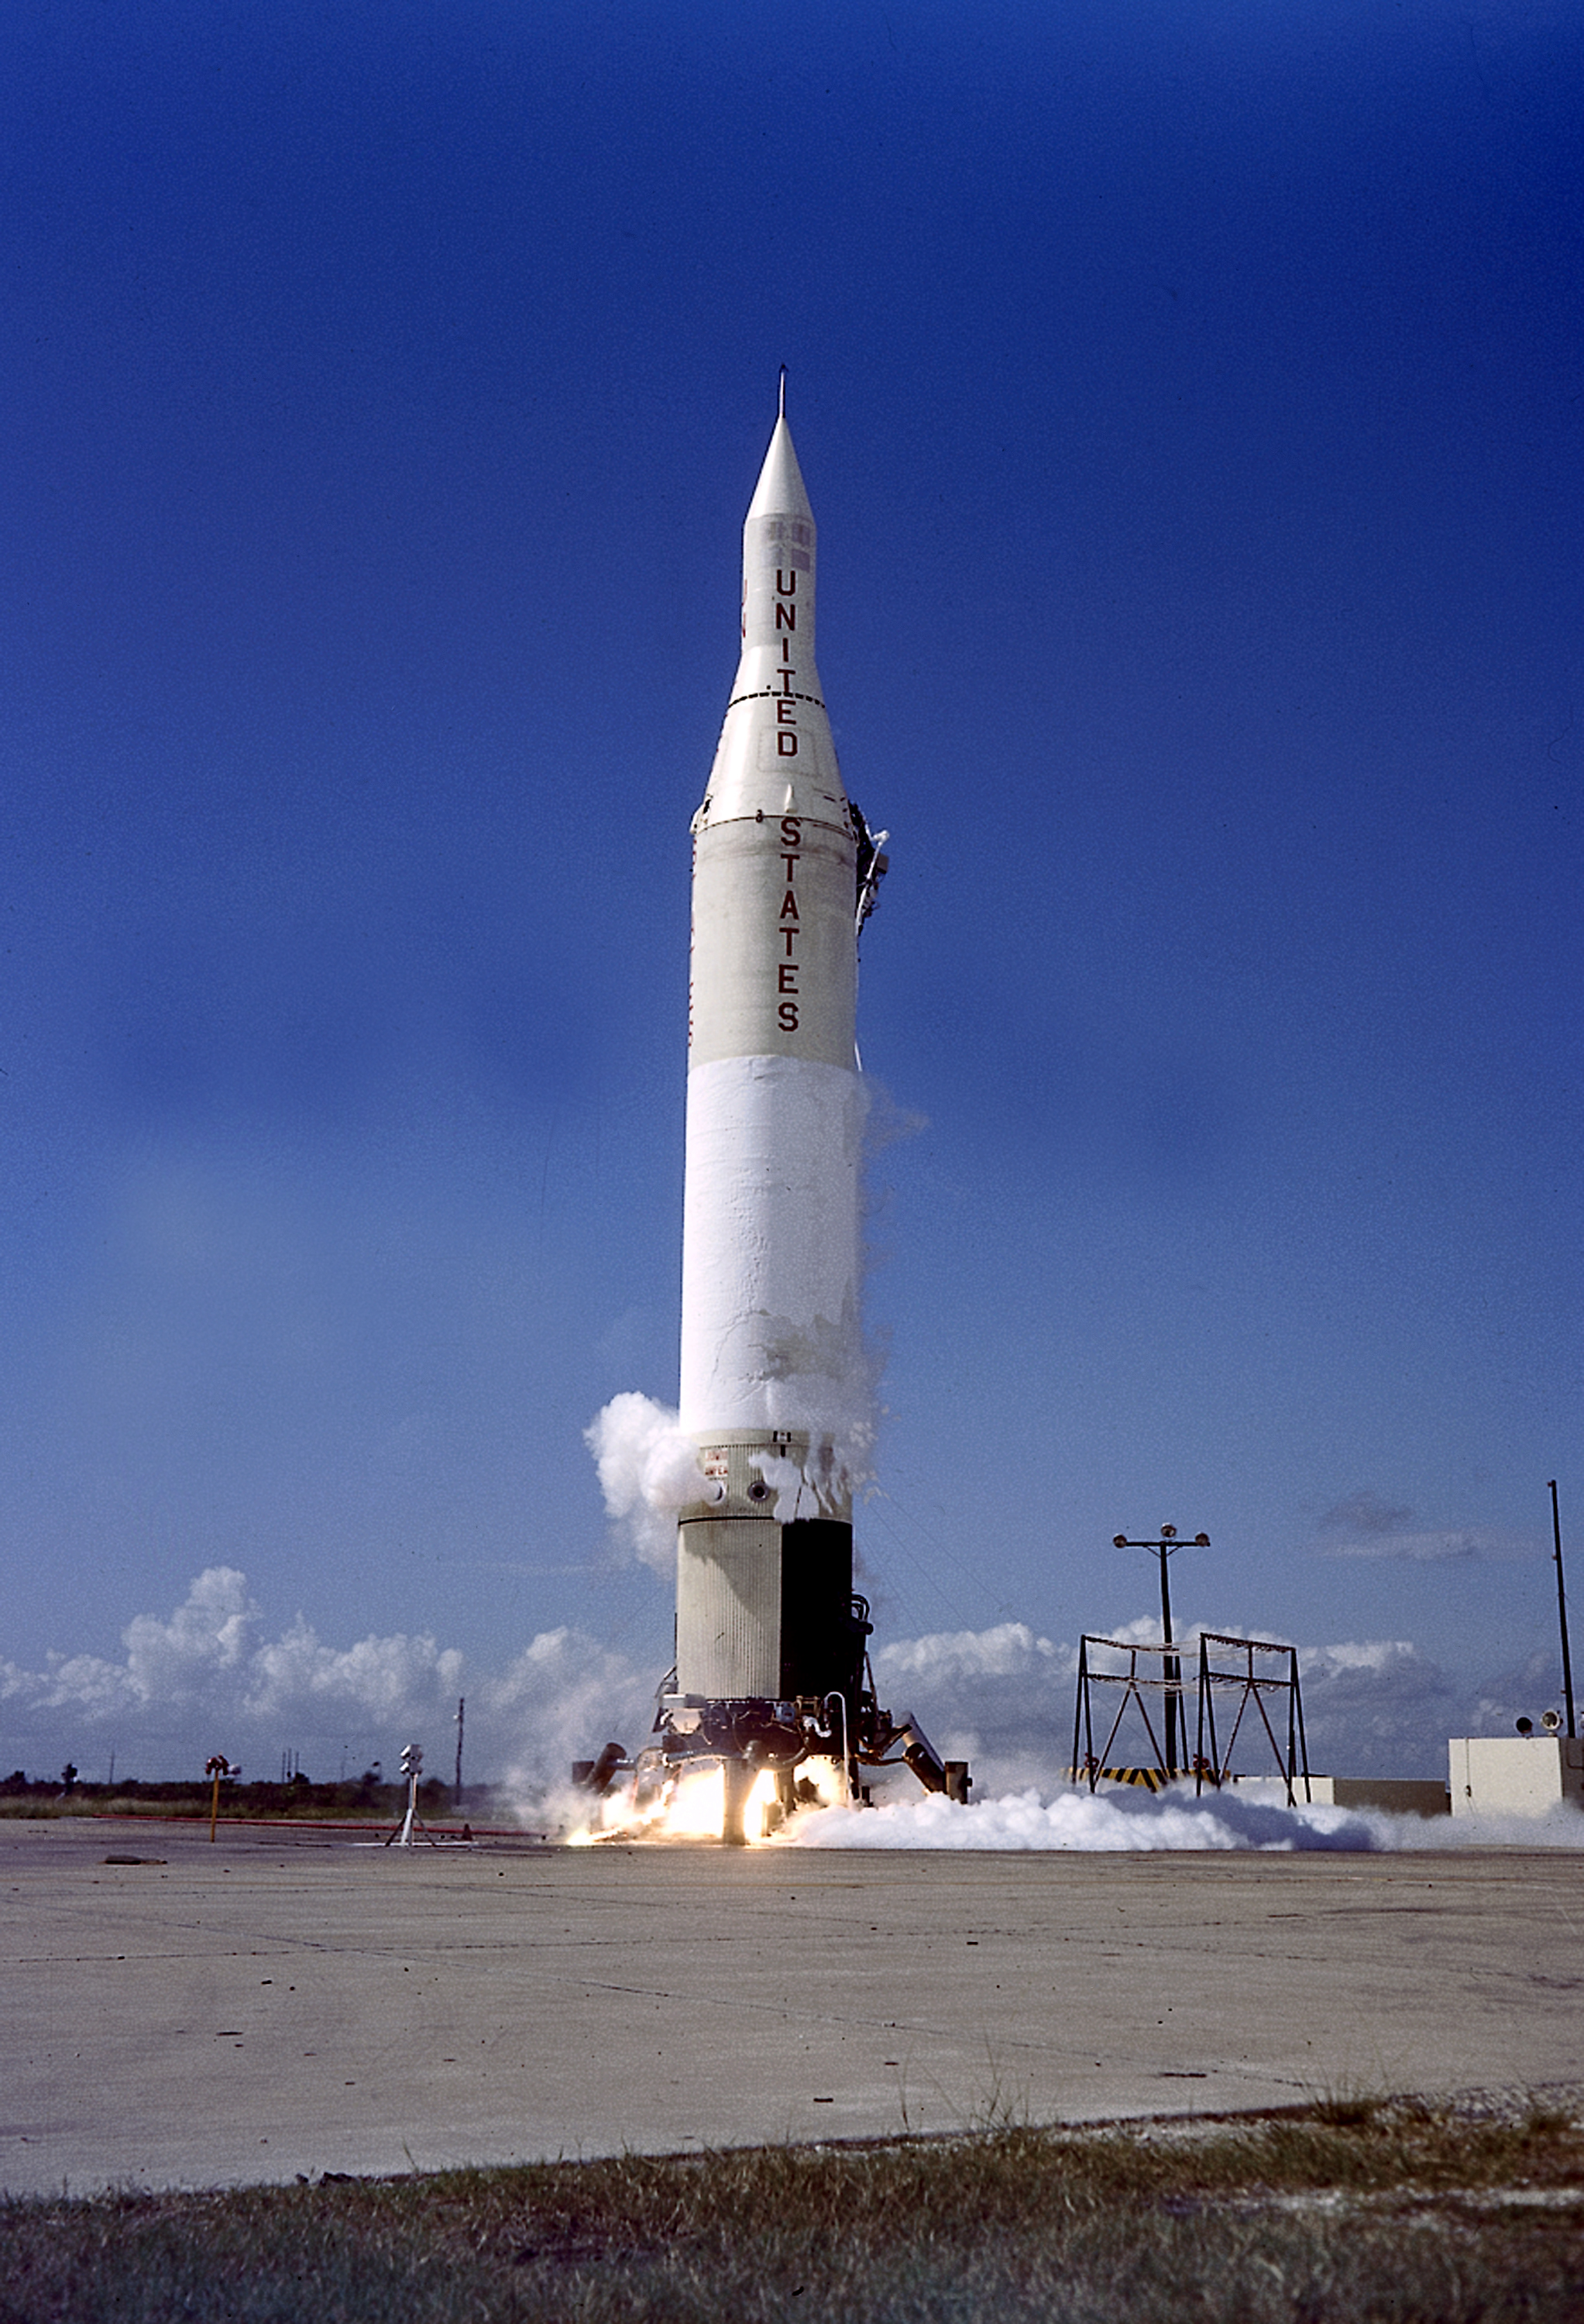 File:Juno II rocket.jpg - Wikimedia Commons